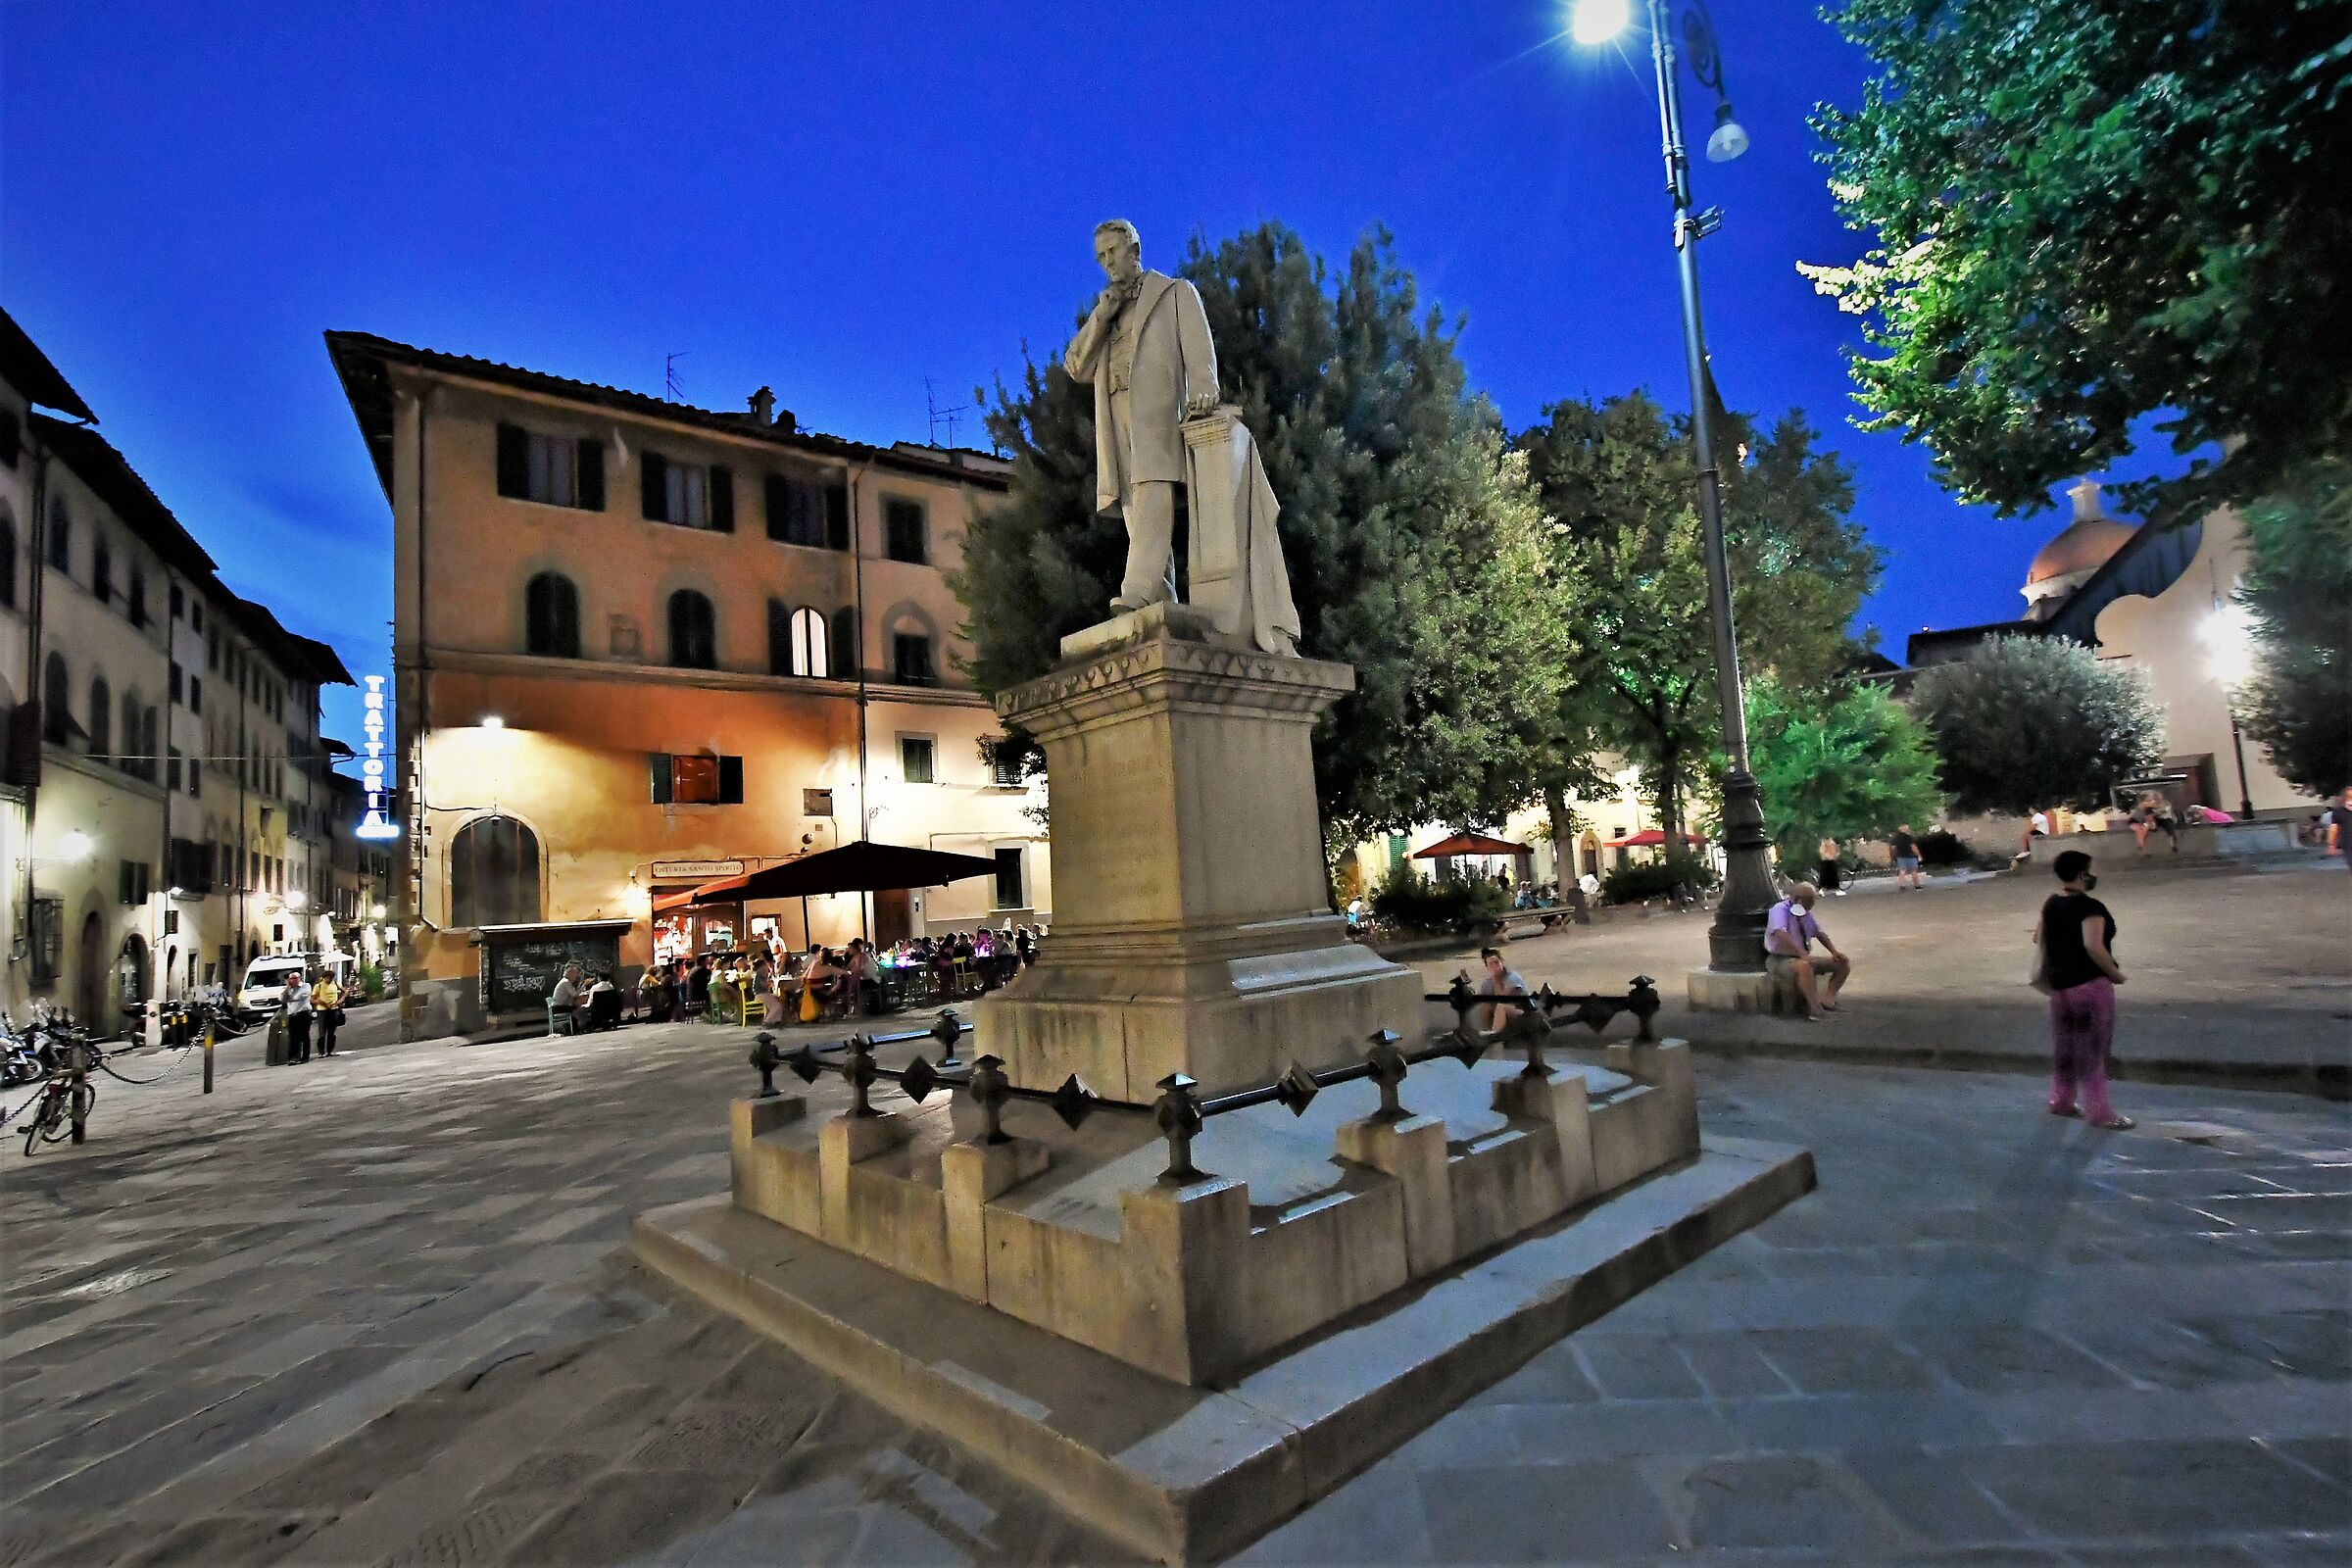 Piazza Santo Spirito in Florence...